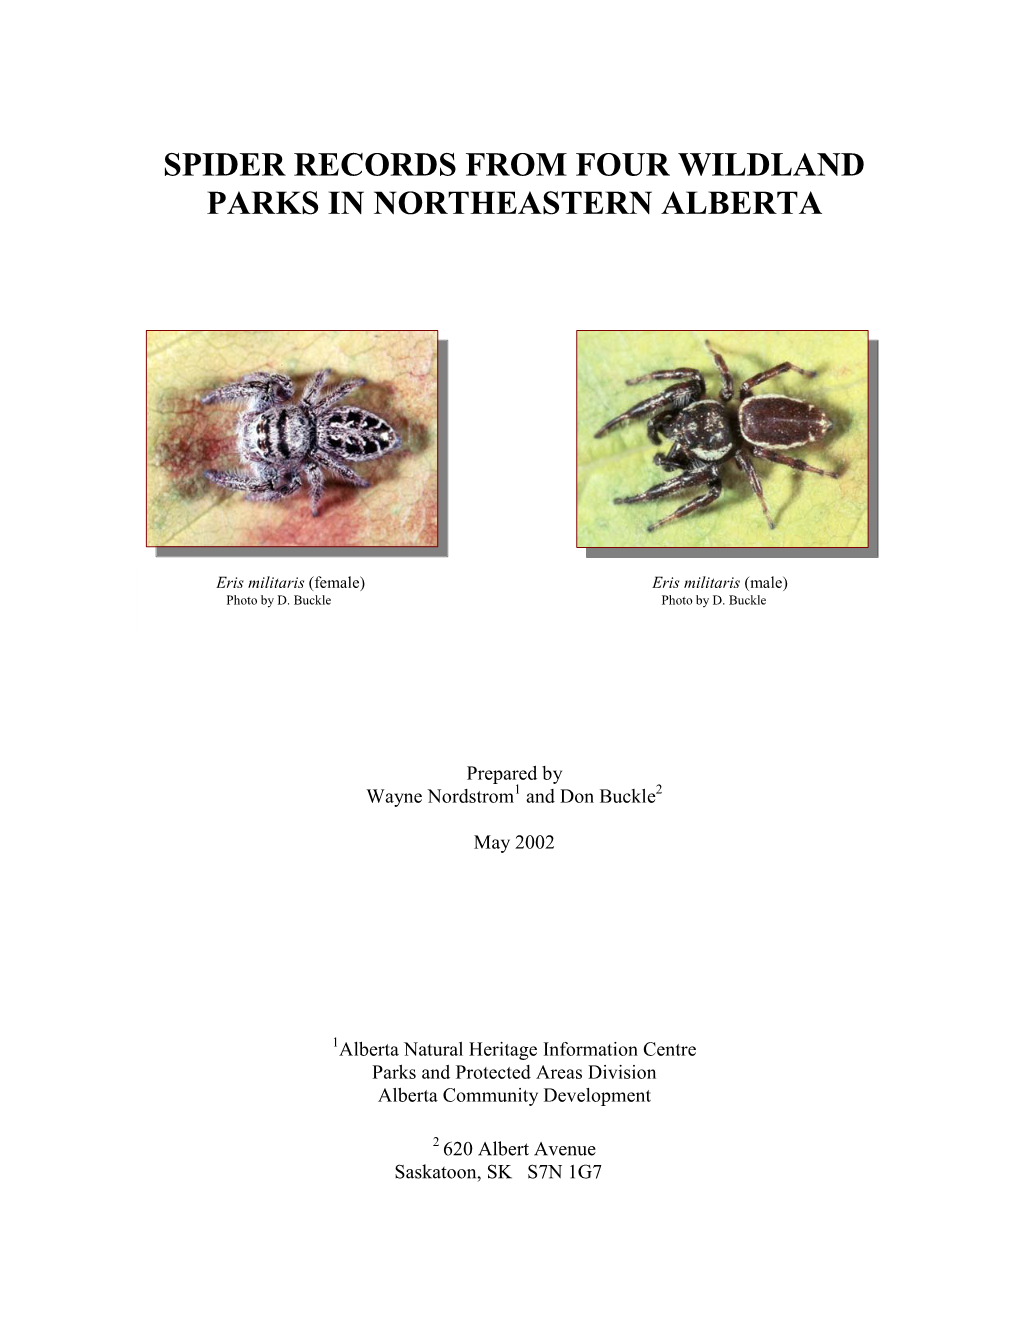 Spider Records from Four Wildland Parks in Northeastern Alberta